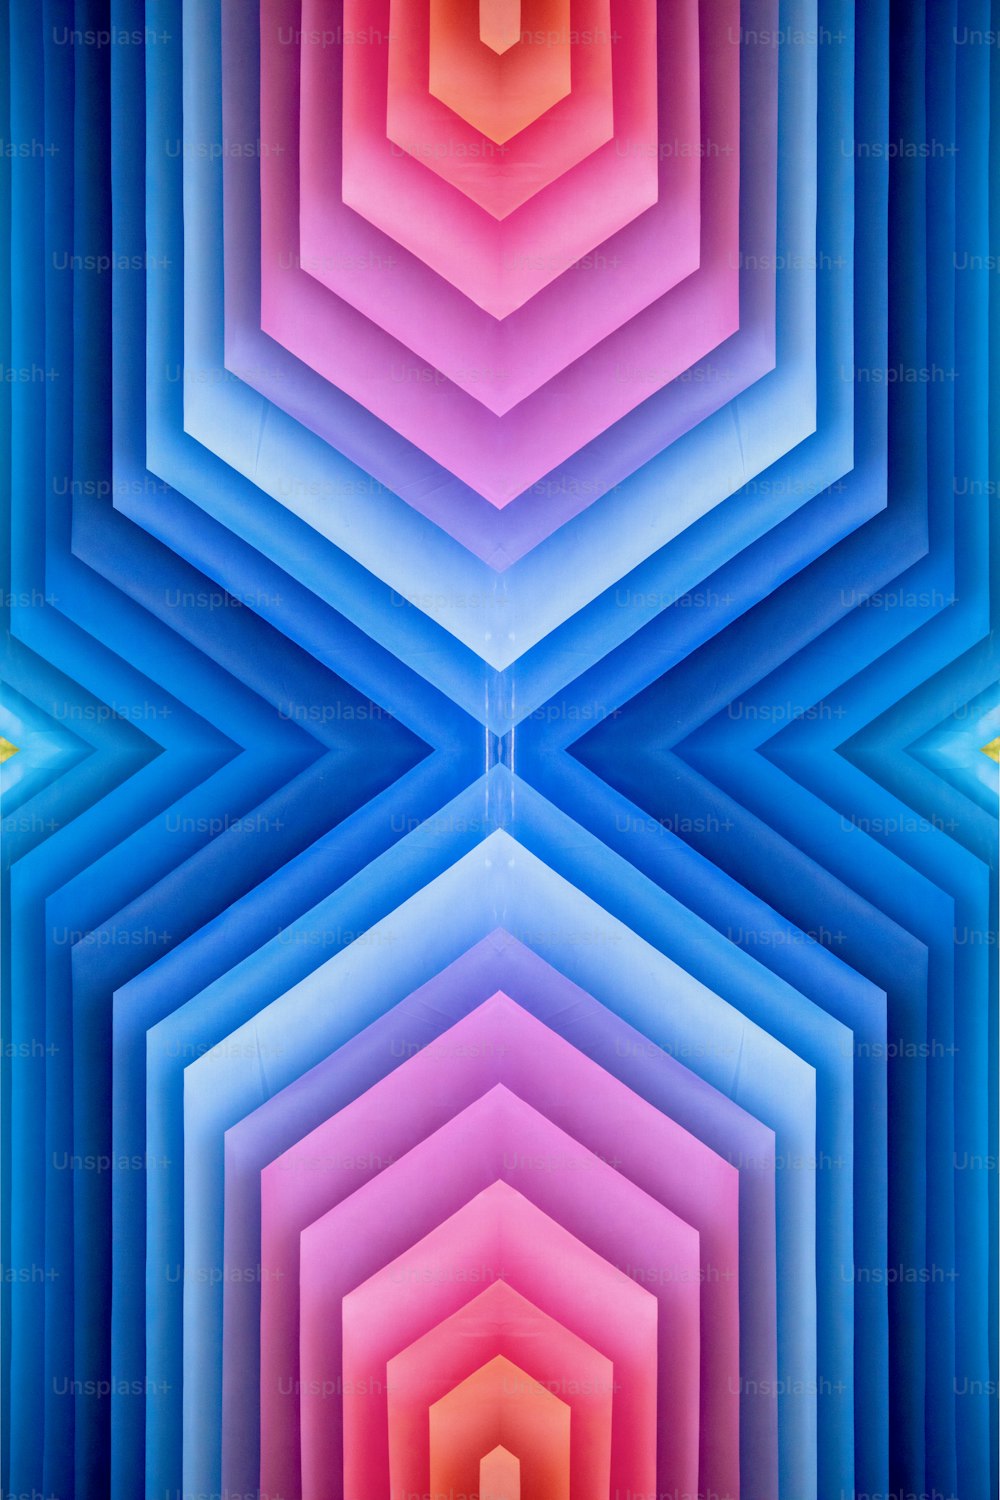 色とりどりの六角形の構造の抽象的な画像